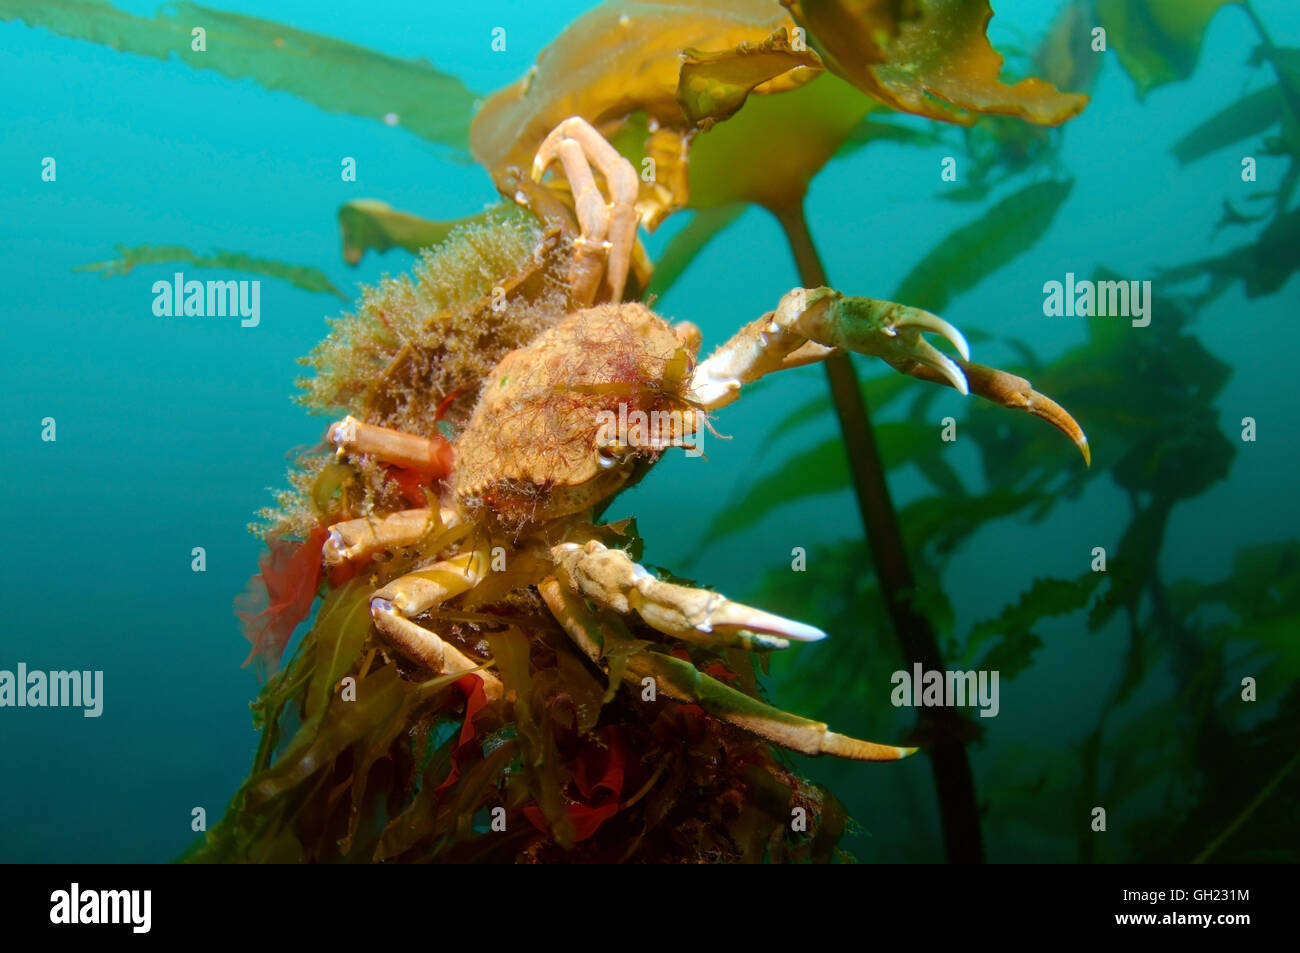 Grande Araignée ou crabe lyre de l'Atlantique (Hyas araneus) assis sur Sea Rod (Laminaria hyperborea), mer de Barents, l'Arctique russe Banque D'Images